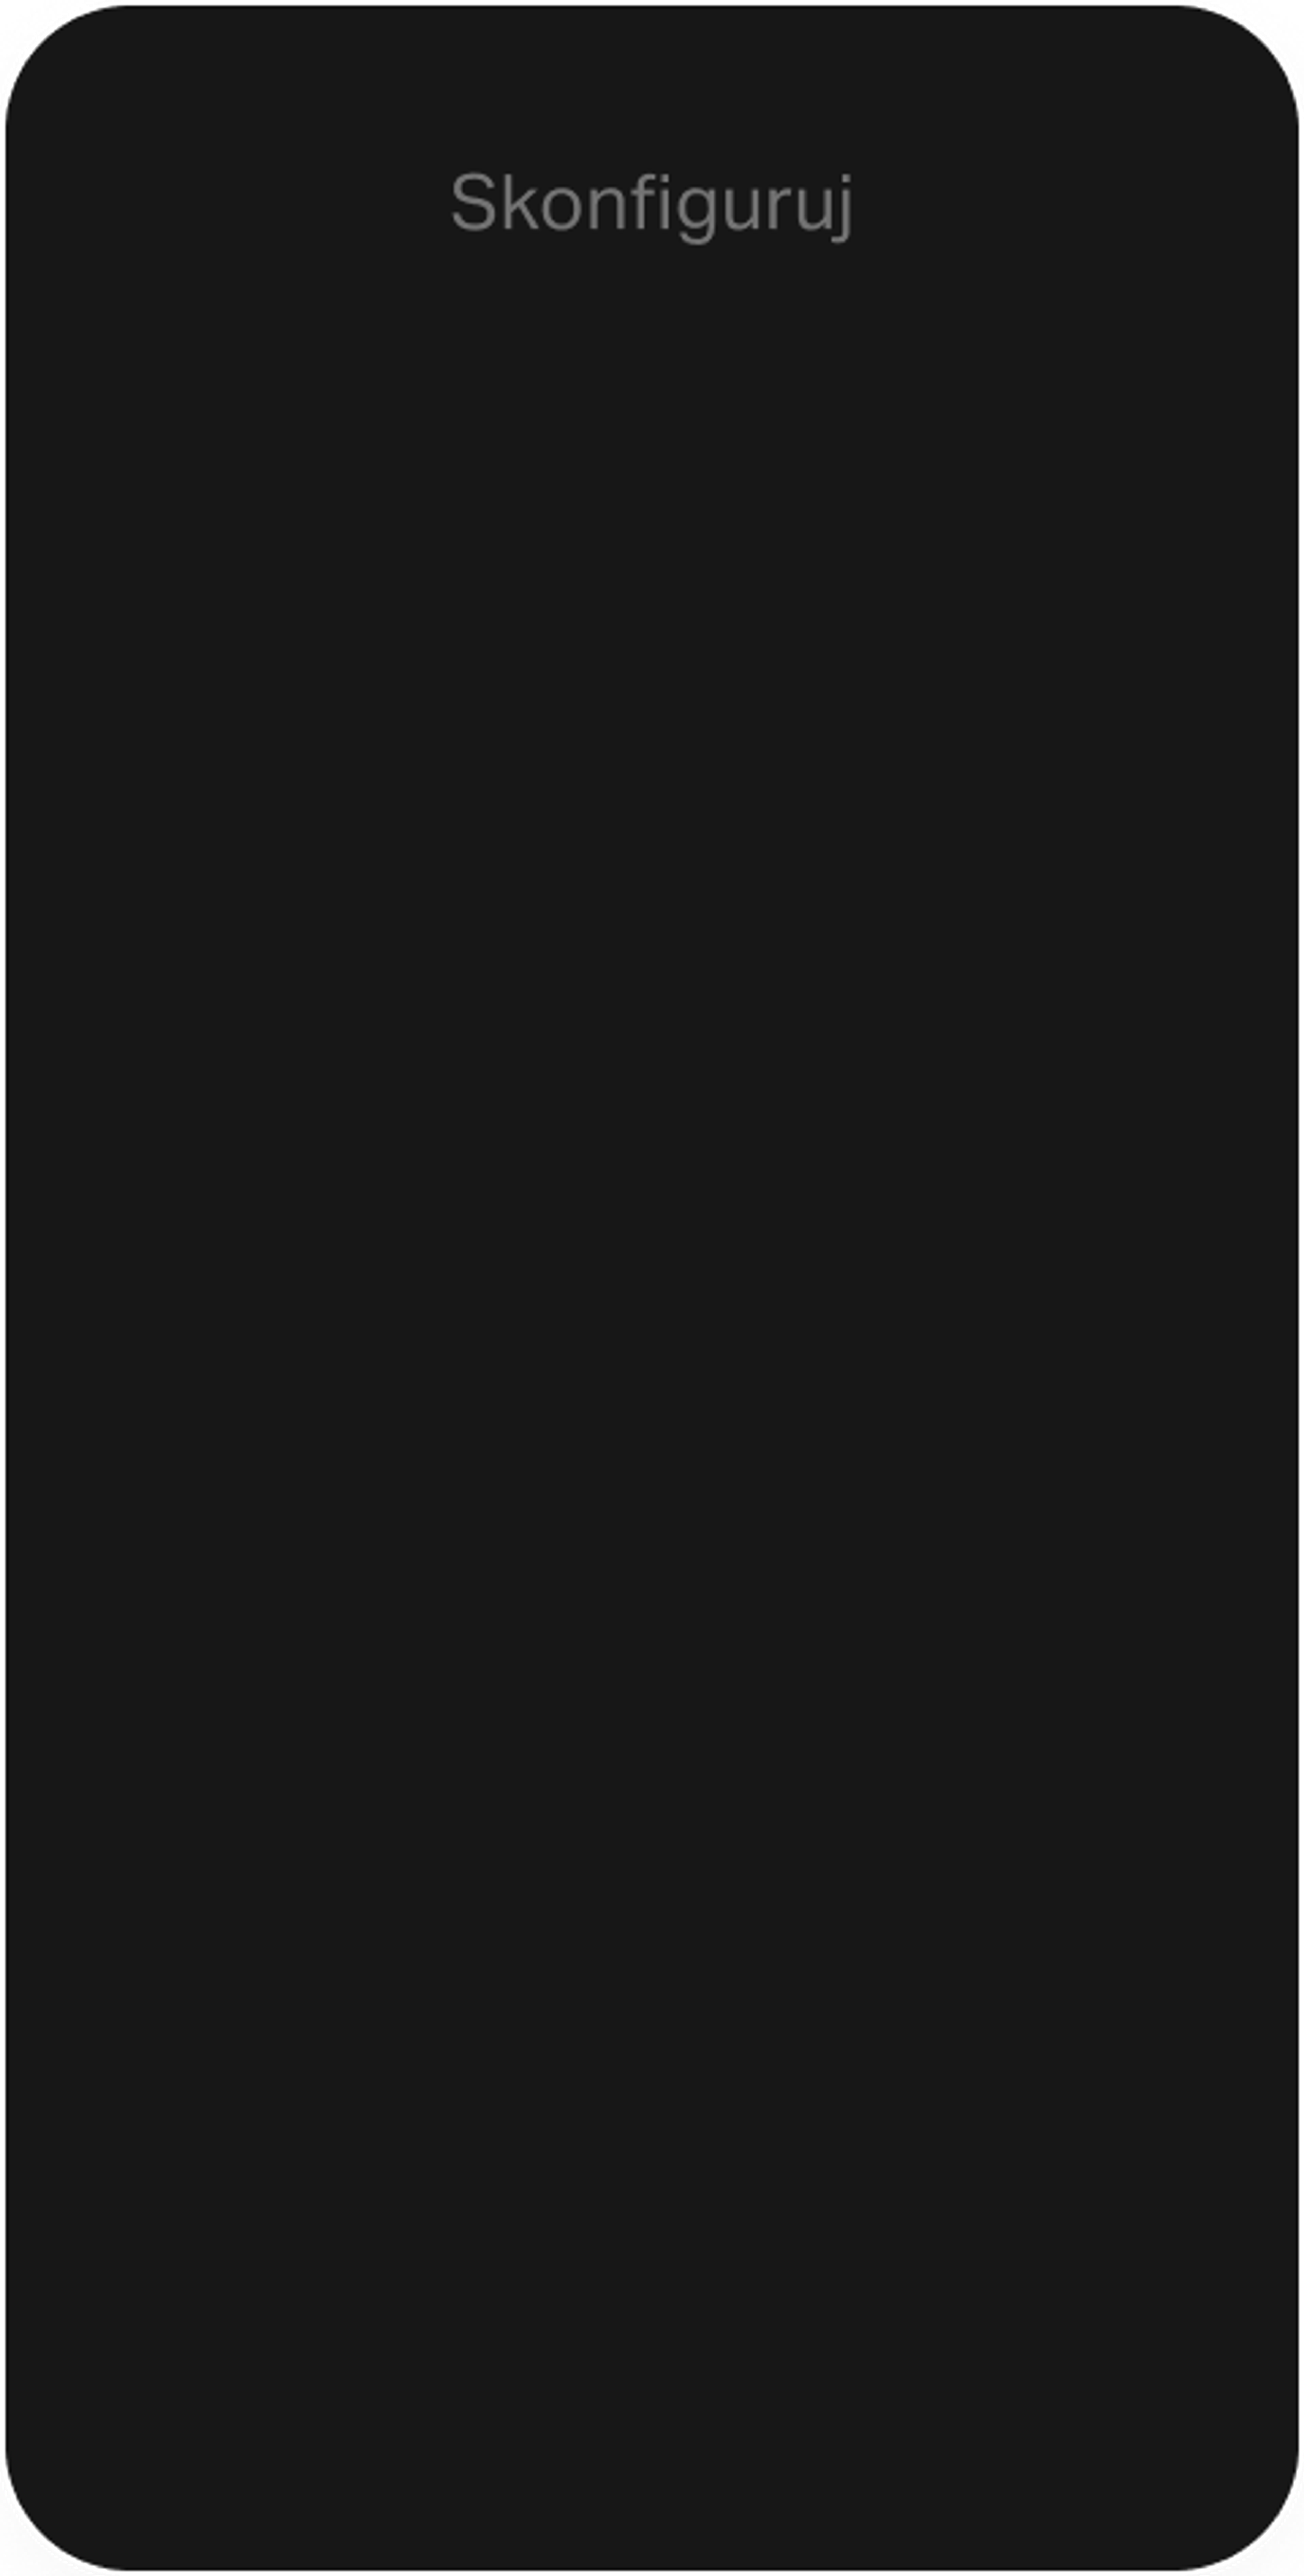 Konfigurowanie telefonu z pustym ekranem w kolorze czarnym